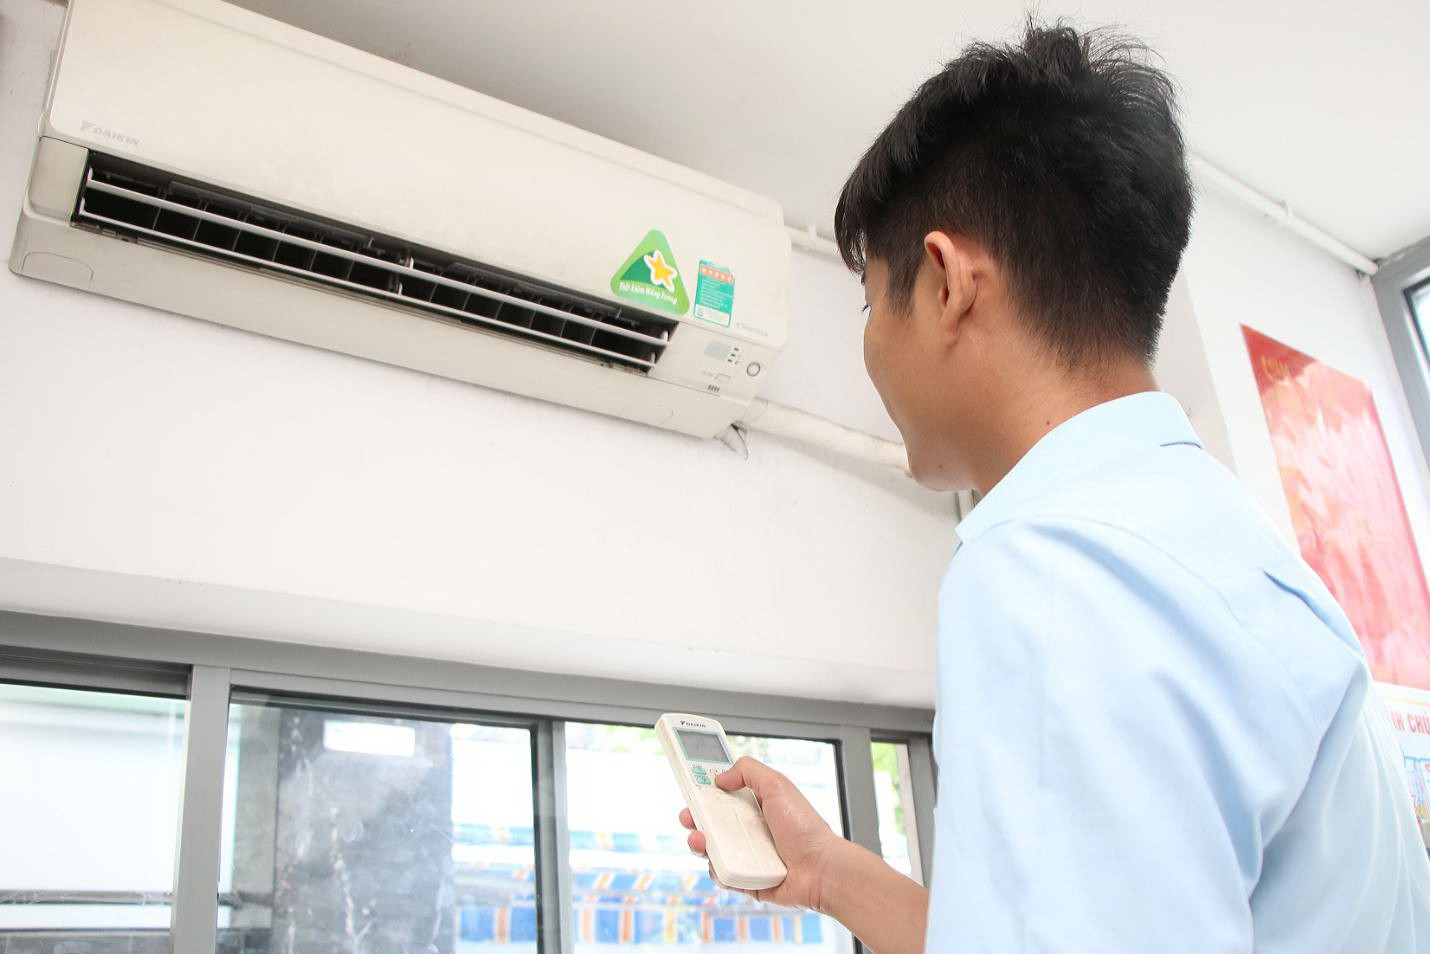 Thợ điện chỉ cách sử dụng điều hòa mùa nắng nóng hiệu quả: Bật suốt ngày cũng không lo tốn điện - ảnh 2